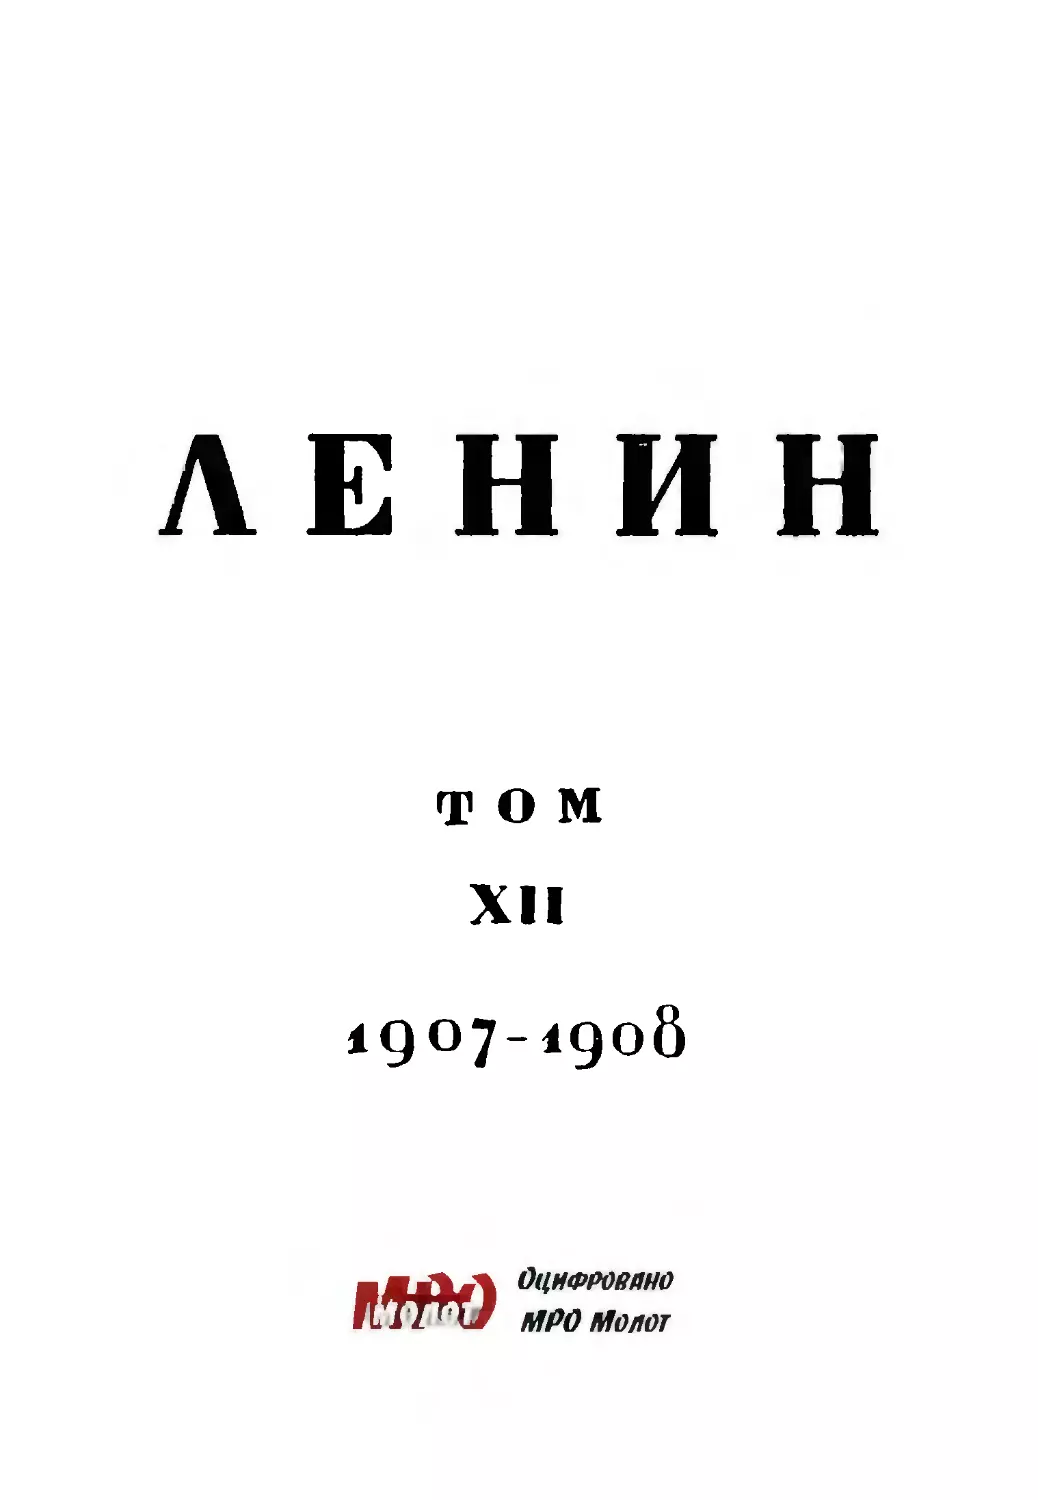 Тит.лист тома